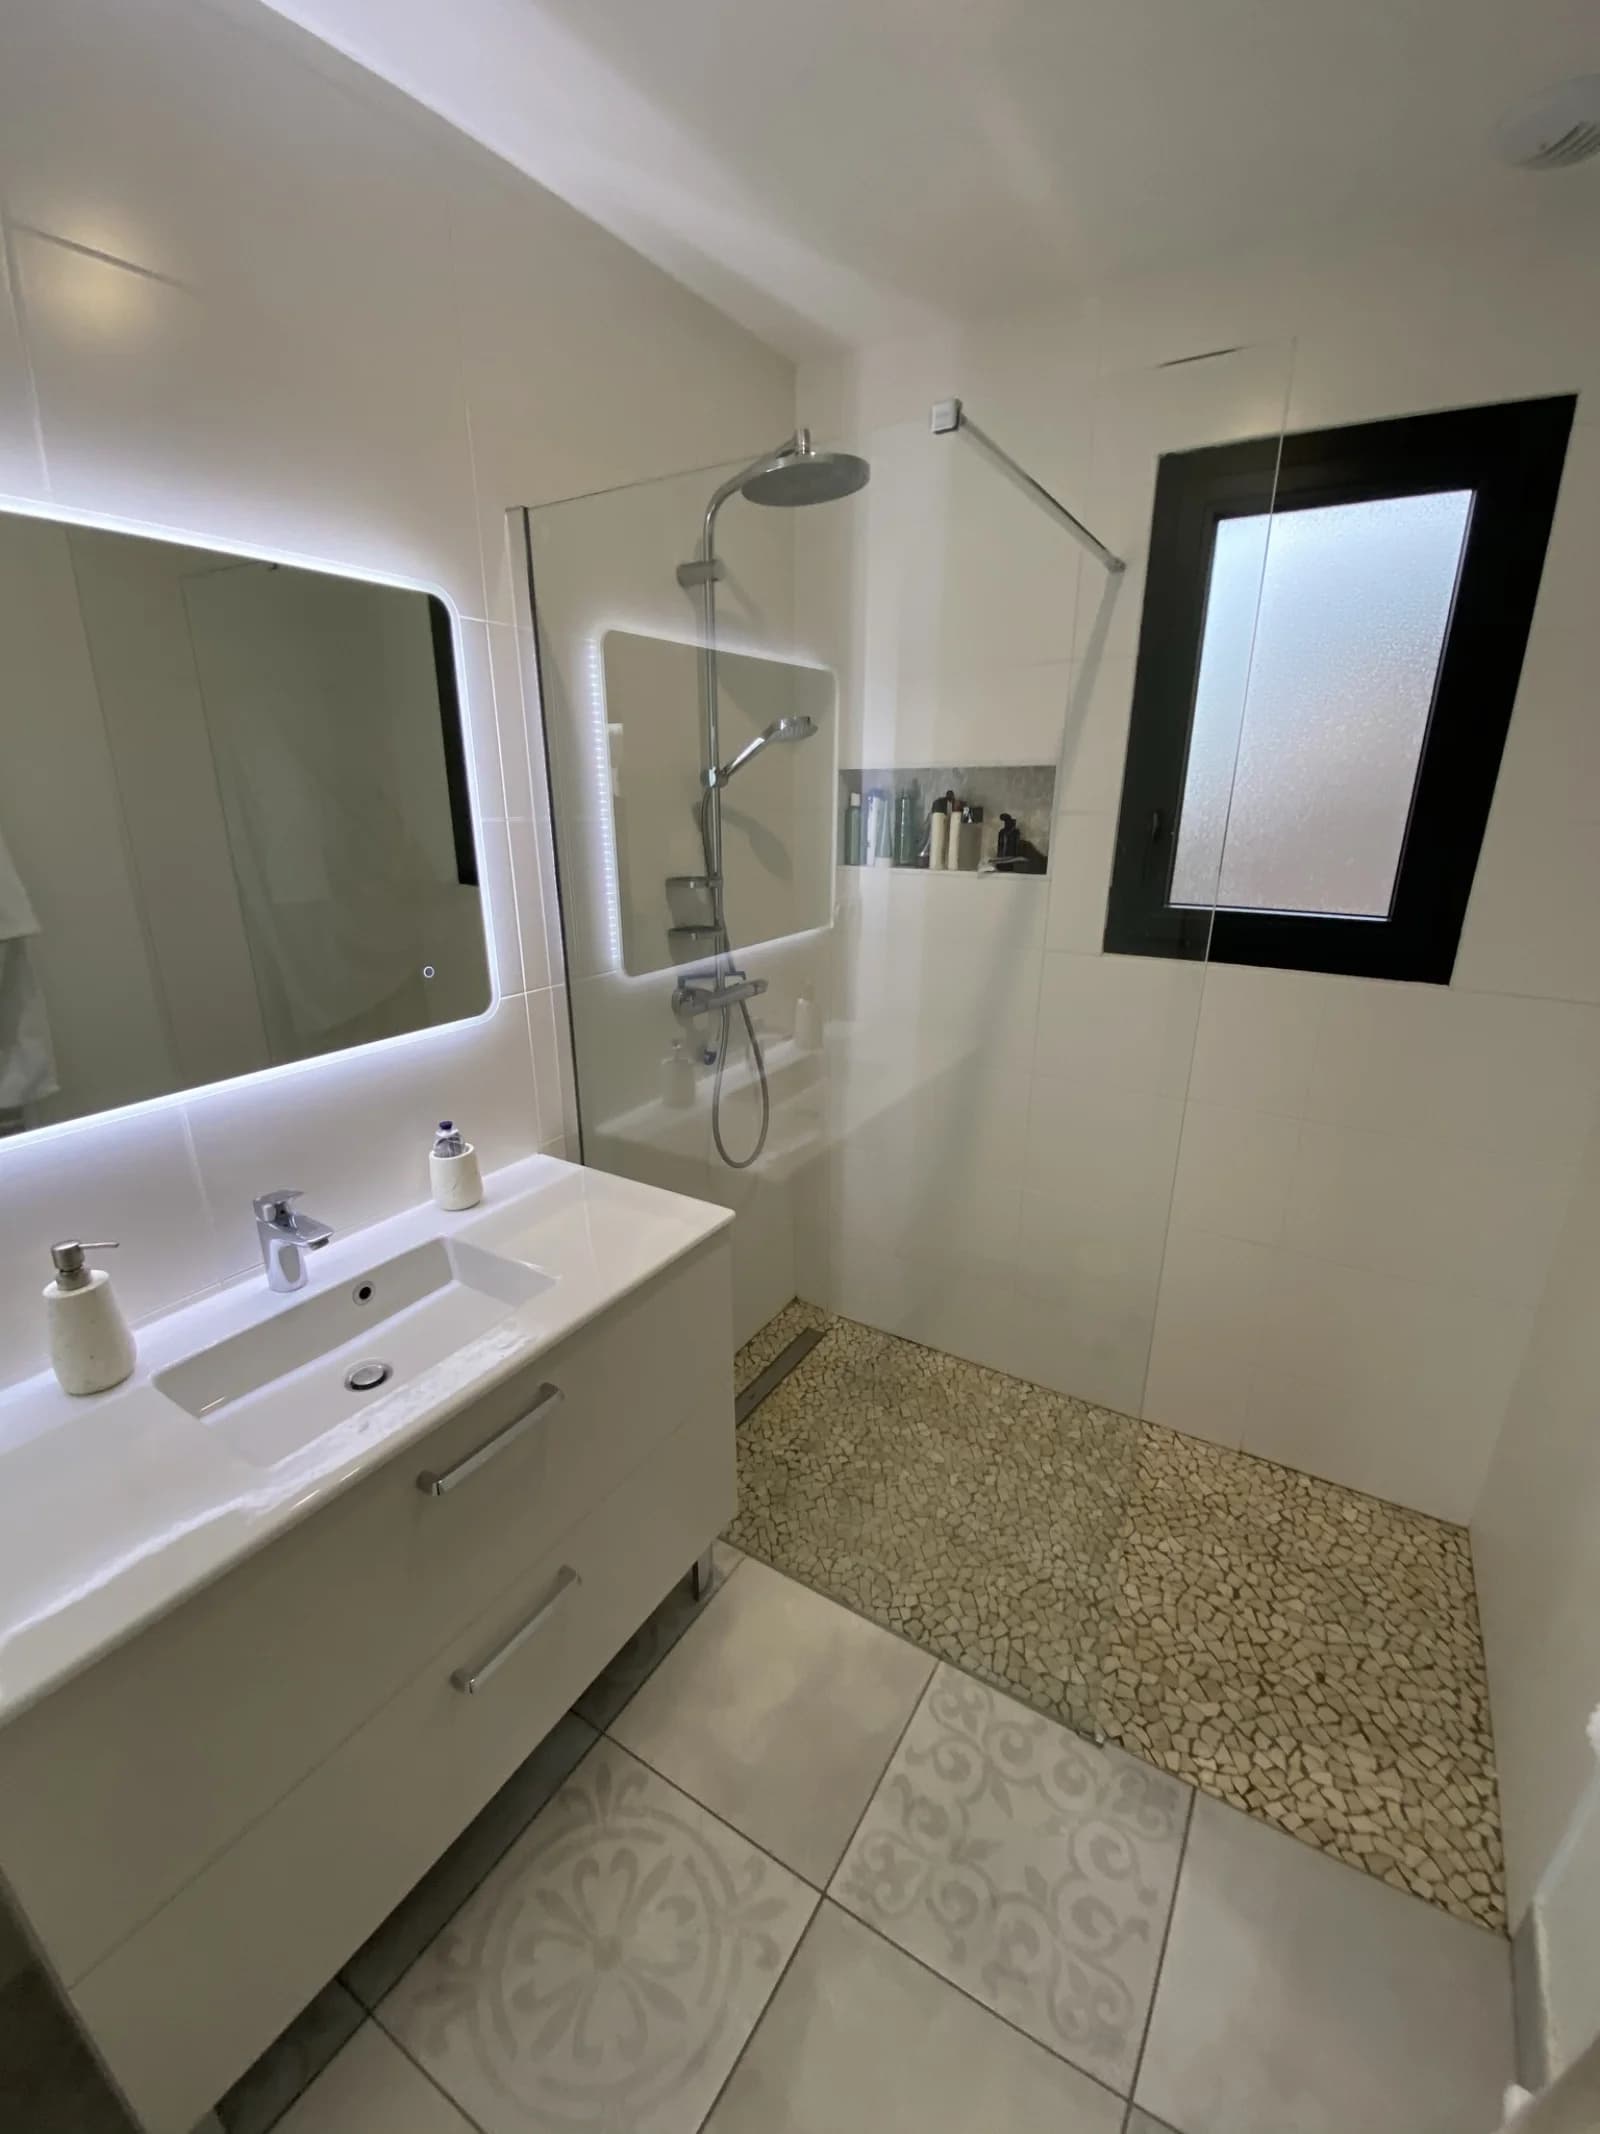 Salle de bain dans Maison contemporaine au coeur du Beaujolais - 1